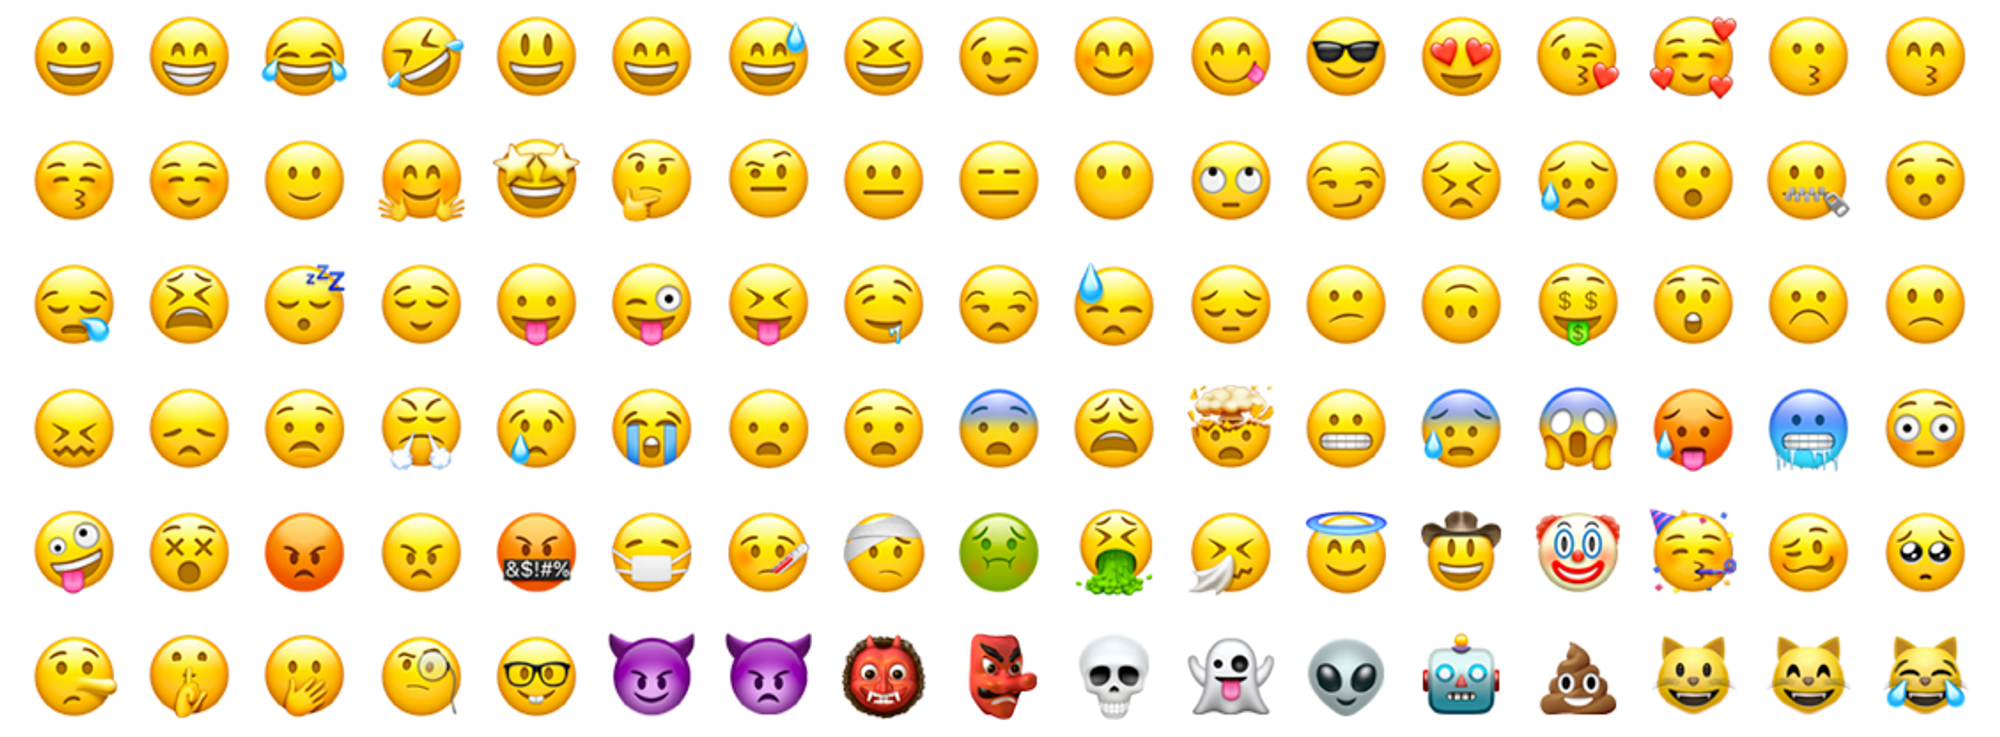 Typecho 中 无法使用 Emoji 表情的解决方法